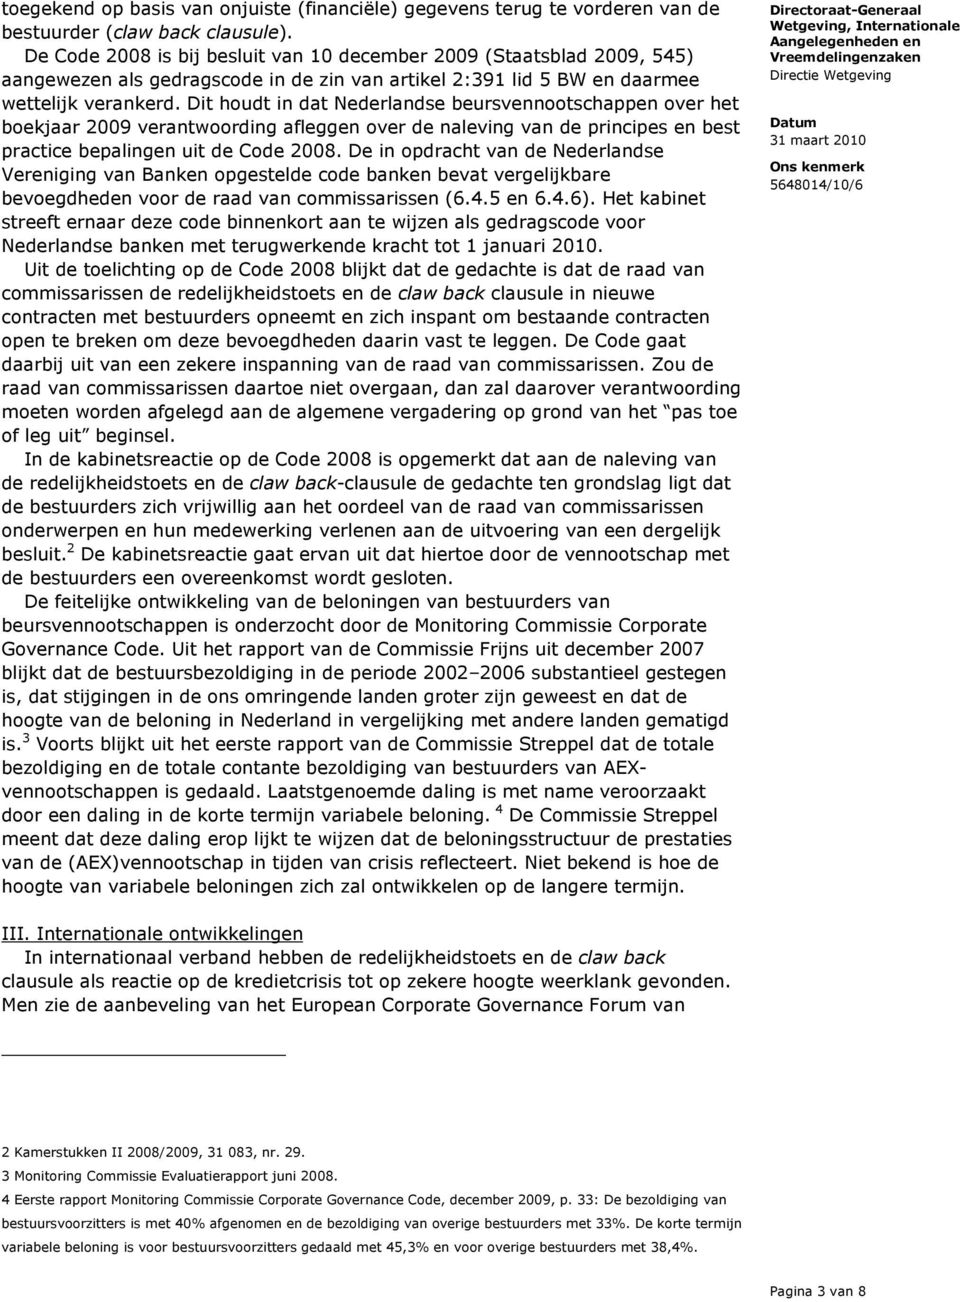 Dit houdt in dat Nederlandse beursvennootschappen over het boekjaar 2009 verantwoording afleggen over de naleving van de principes en best practice bepalingen uit de Code 2008.